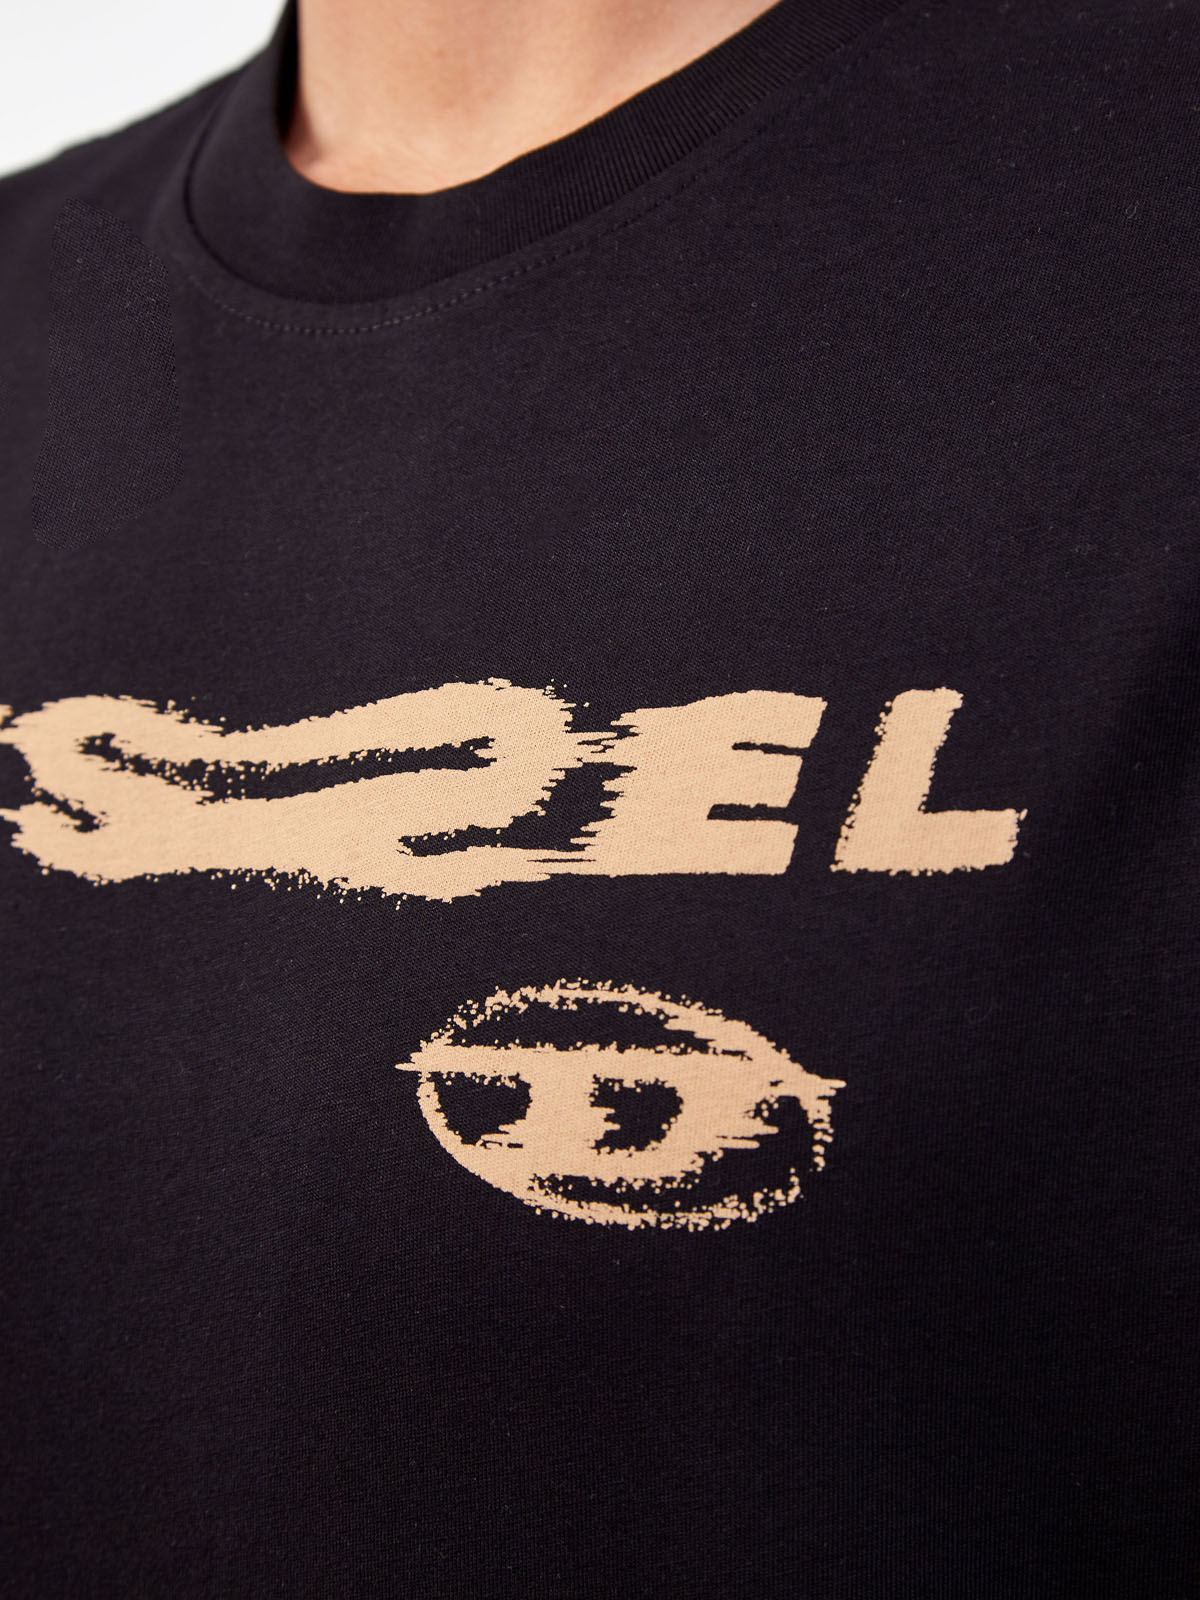 Хлопковая футболка свободного кроя с принтом DIESEL, цвет черный, размер S;XL;2XL;M - фото 5